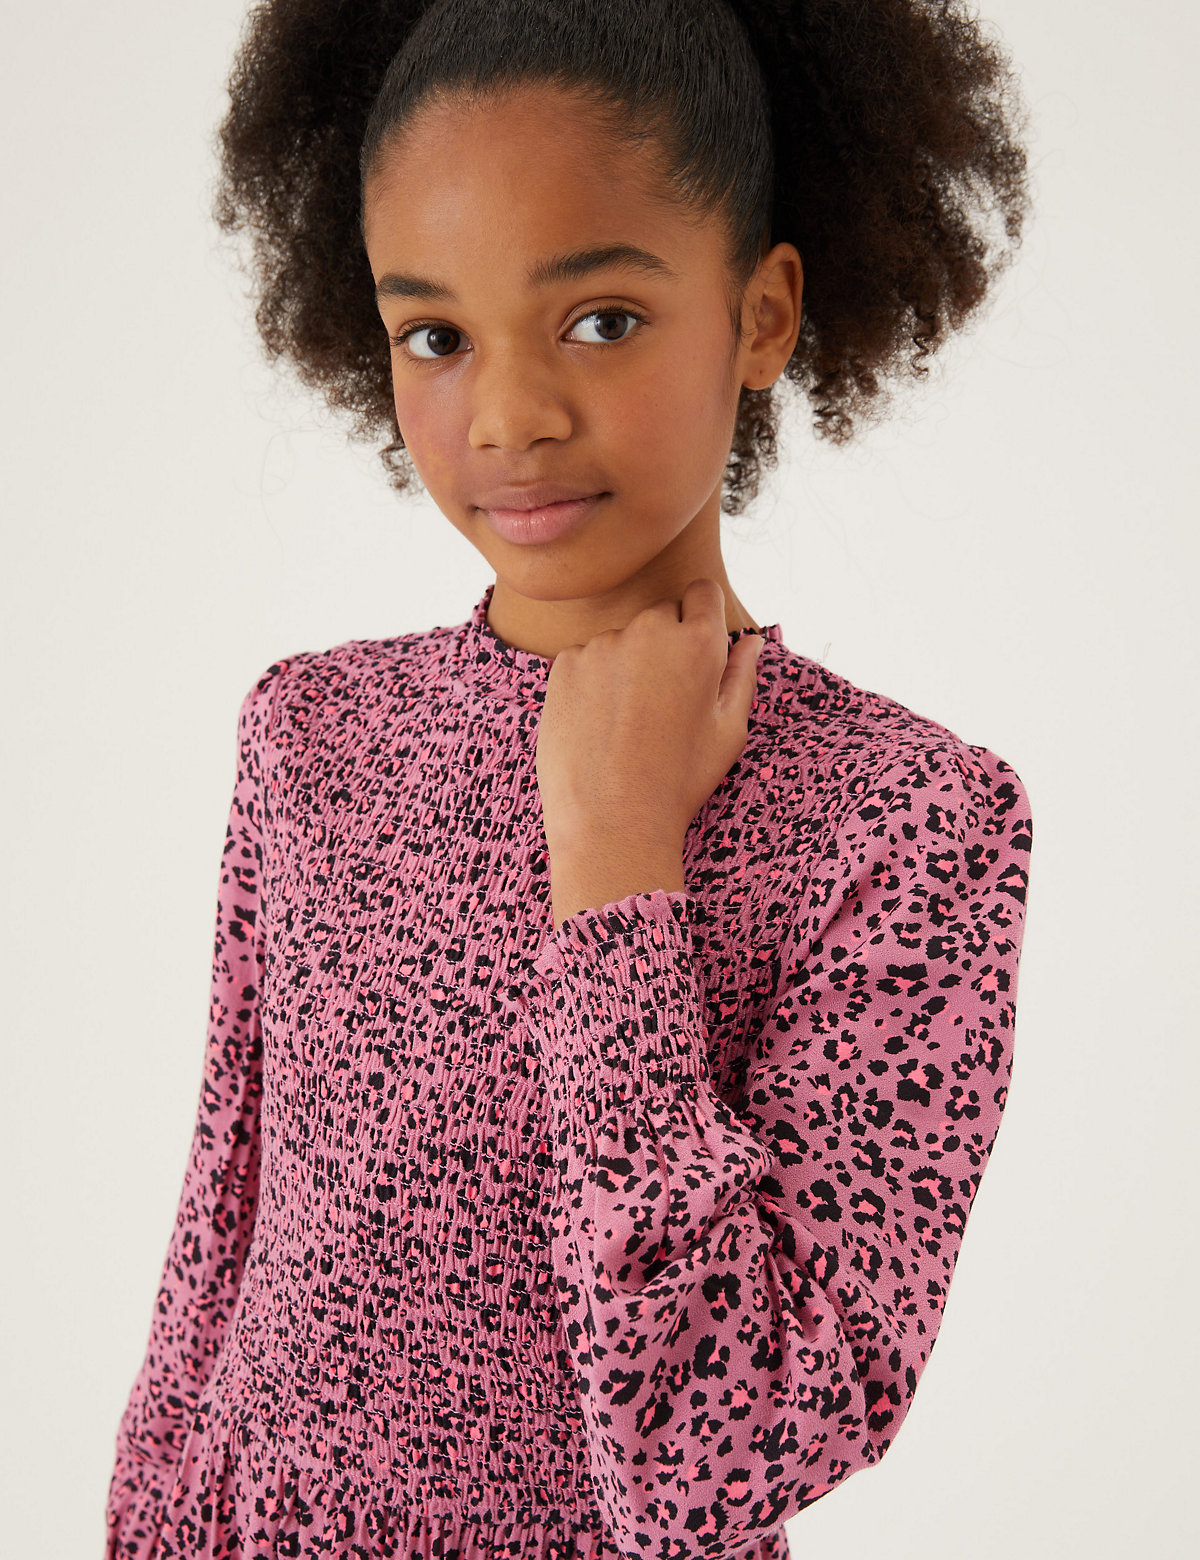 Leopard Print Shirred Dress (6-16 Yrs)